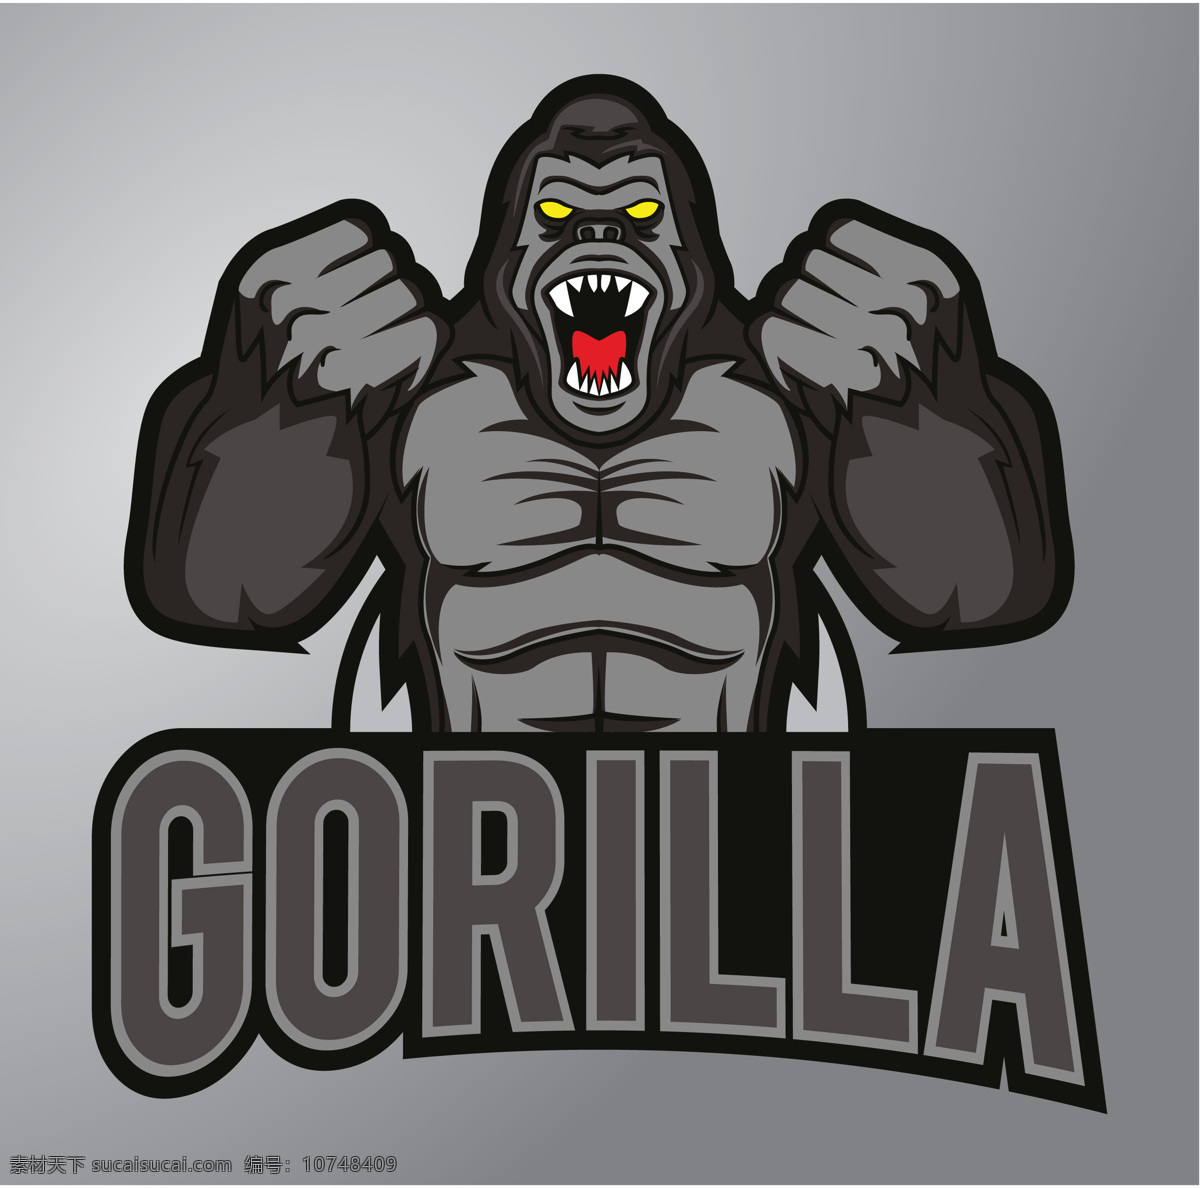 外贸 t 恤 印花 图案 t恤印花 泰山 大猩猩 gorilla 动漫动画